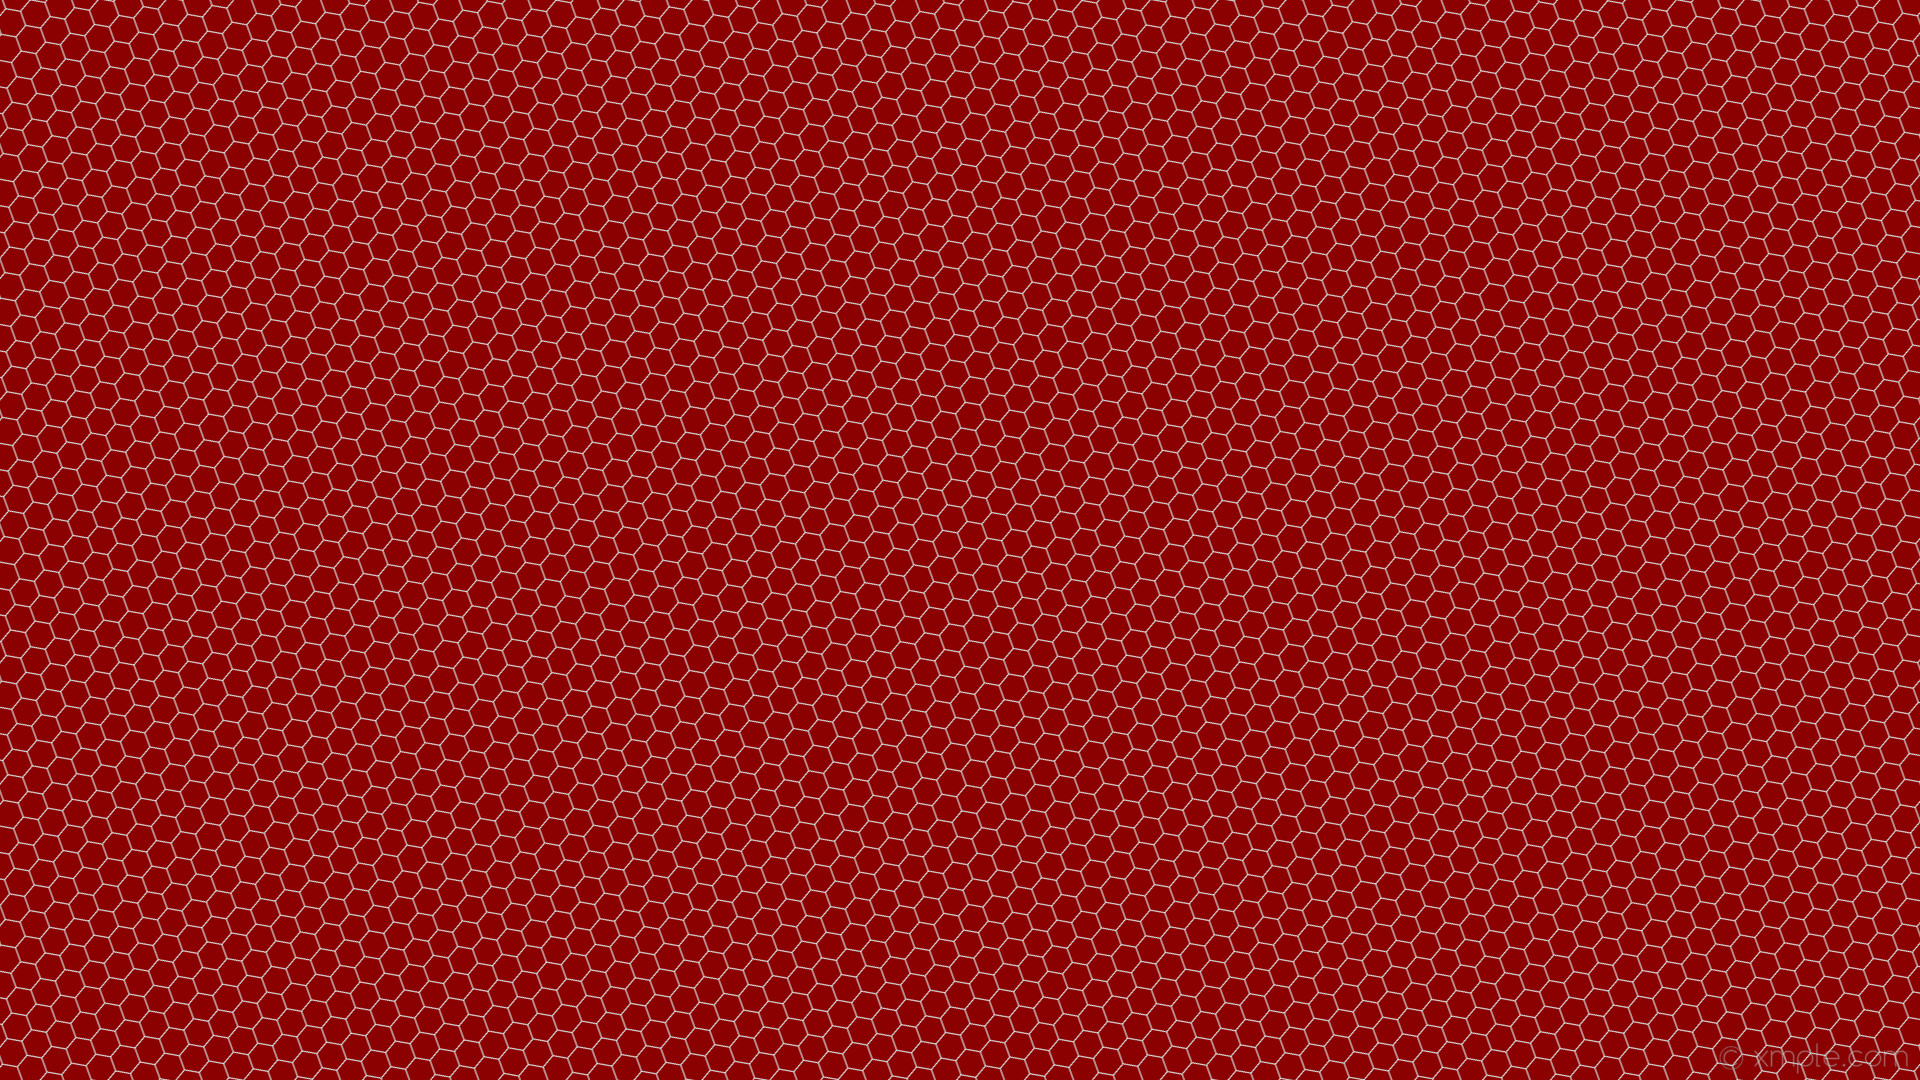 1920x1080 wallpaper beehive hexagon blue honeycomb red dark red light cyan #8b0000  #e0ffff diagonal 20